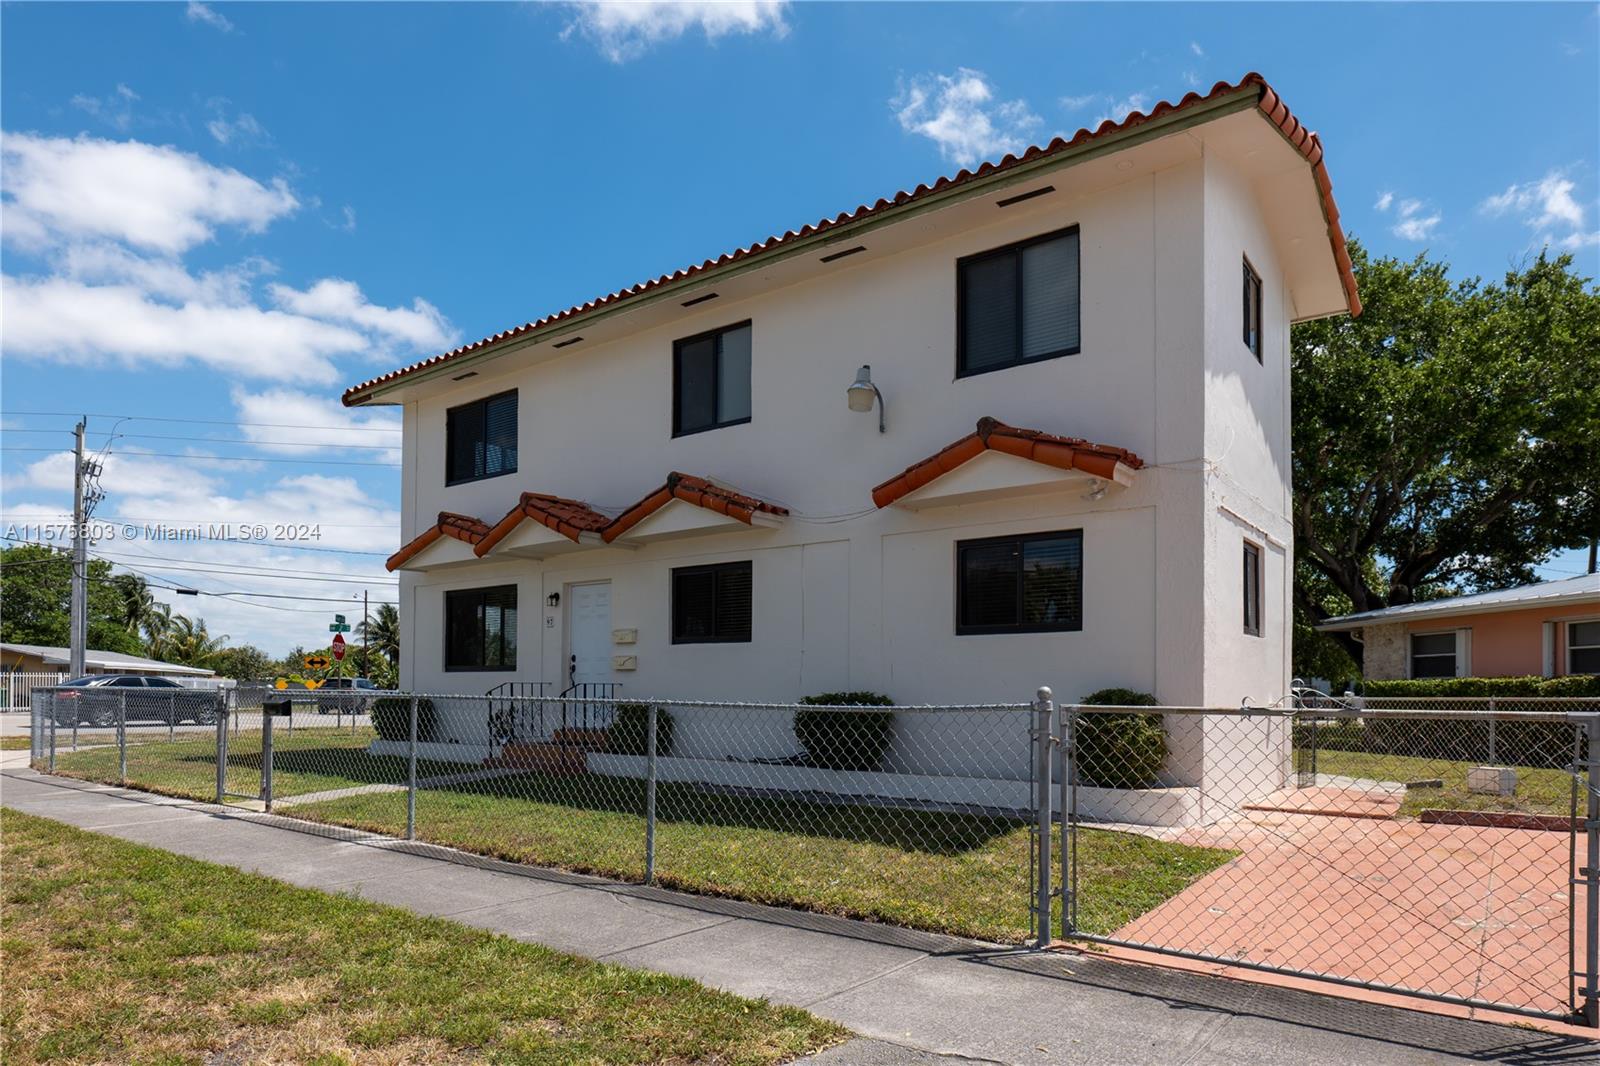 Rental Property at 97 Nw 73rd Pl, Miami, Broward County, Florida -  - $750,000 MO.